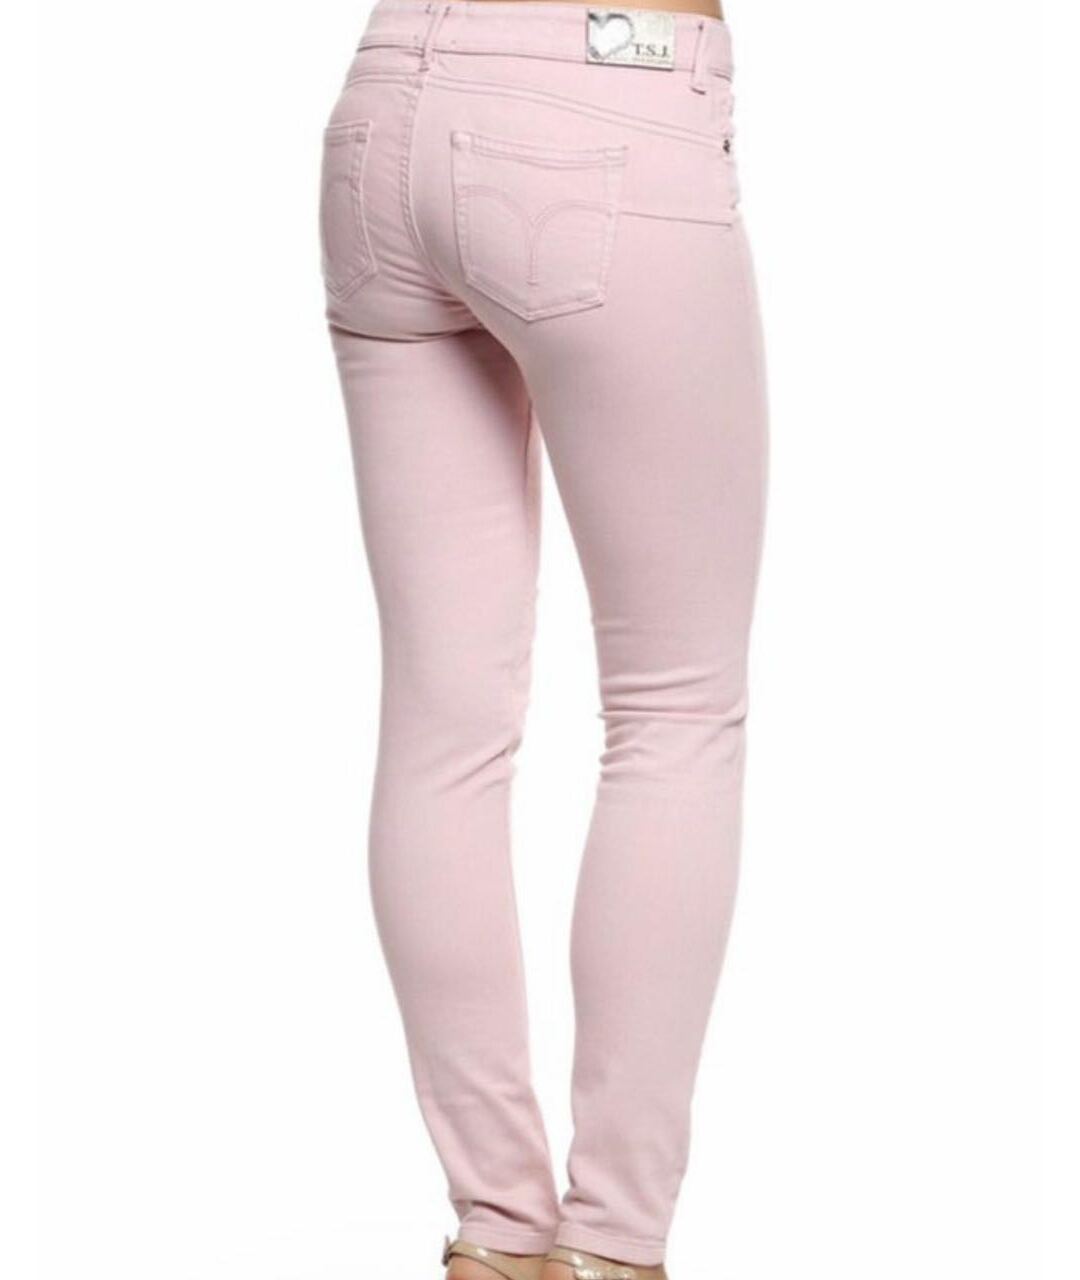 TWIN-SET Розовые хлопковые джинсы слим, фото 3